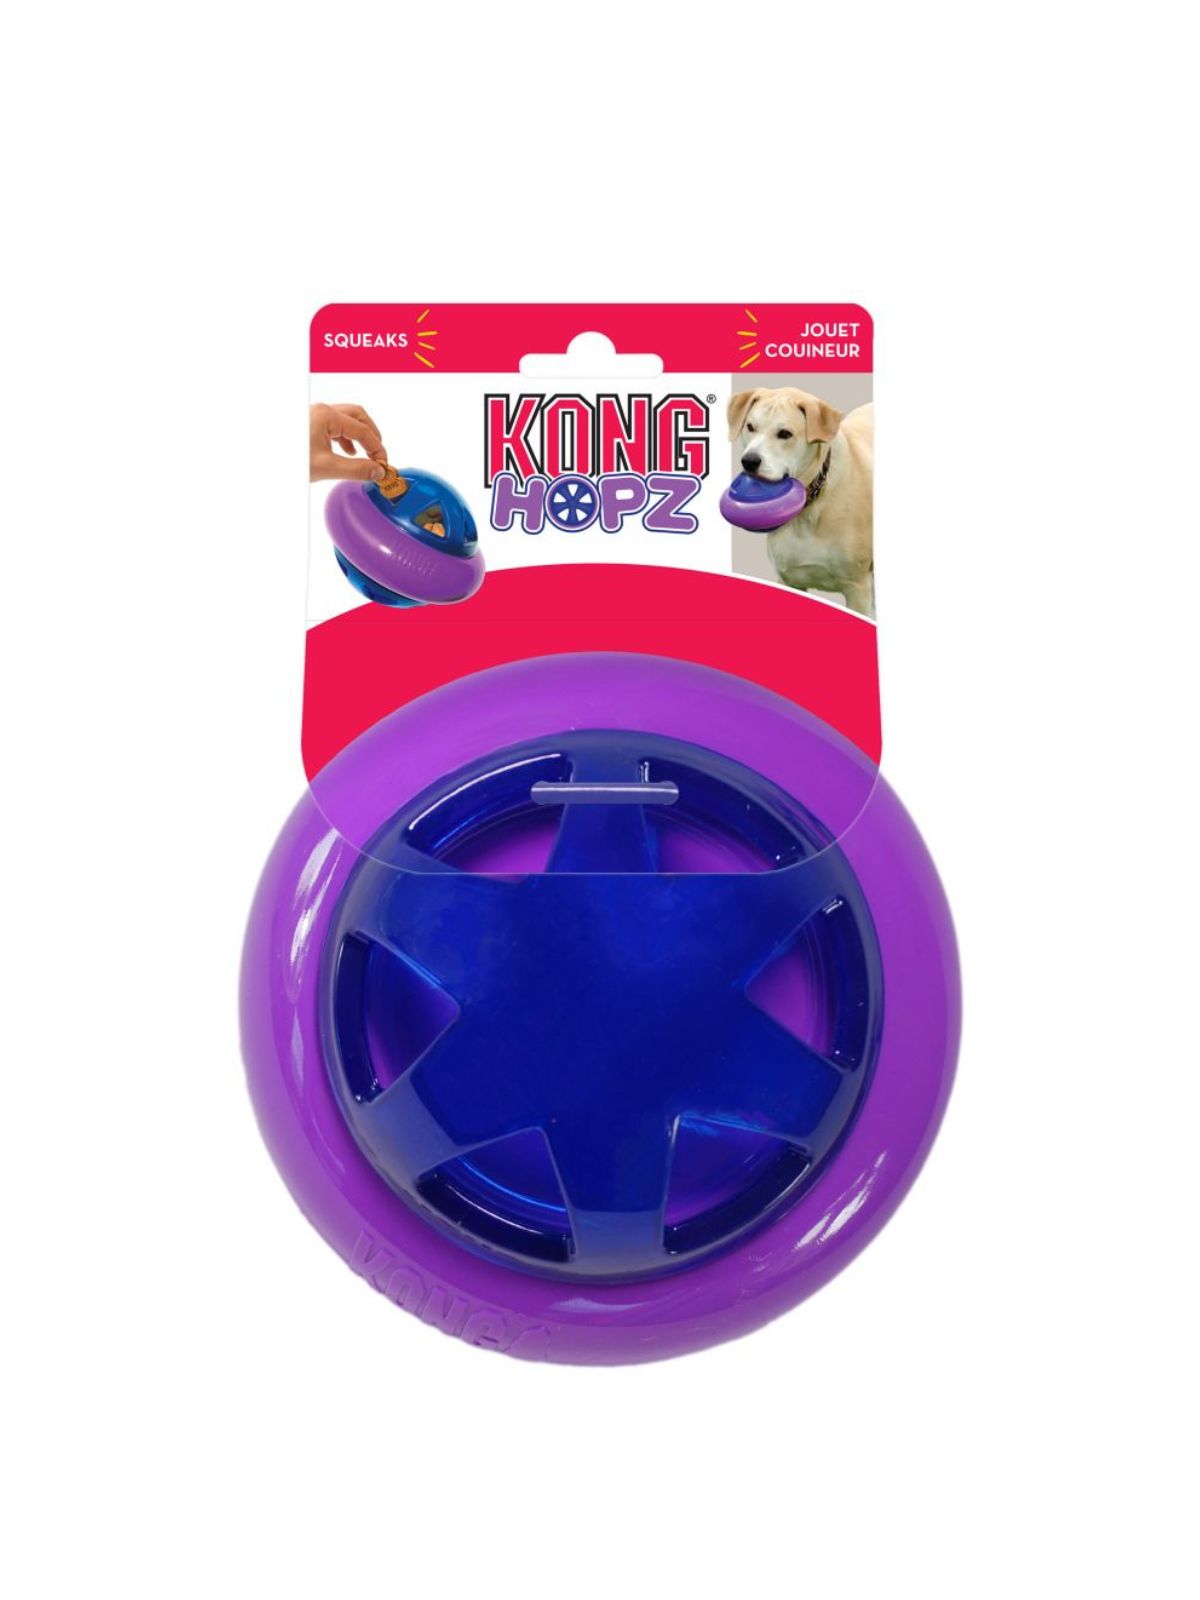 KONG interaktívna hračka pre psa HOPZ